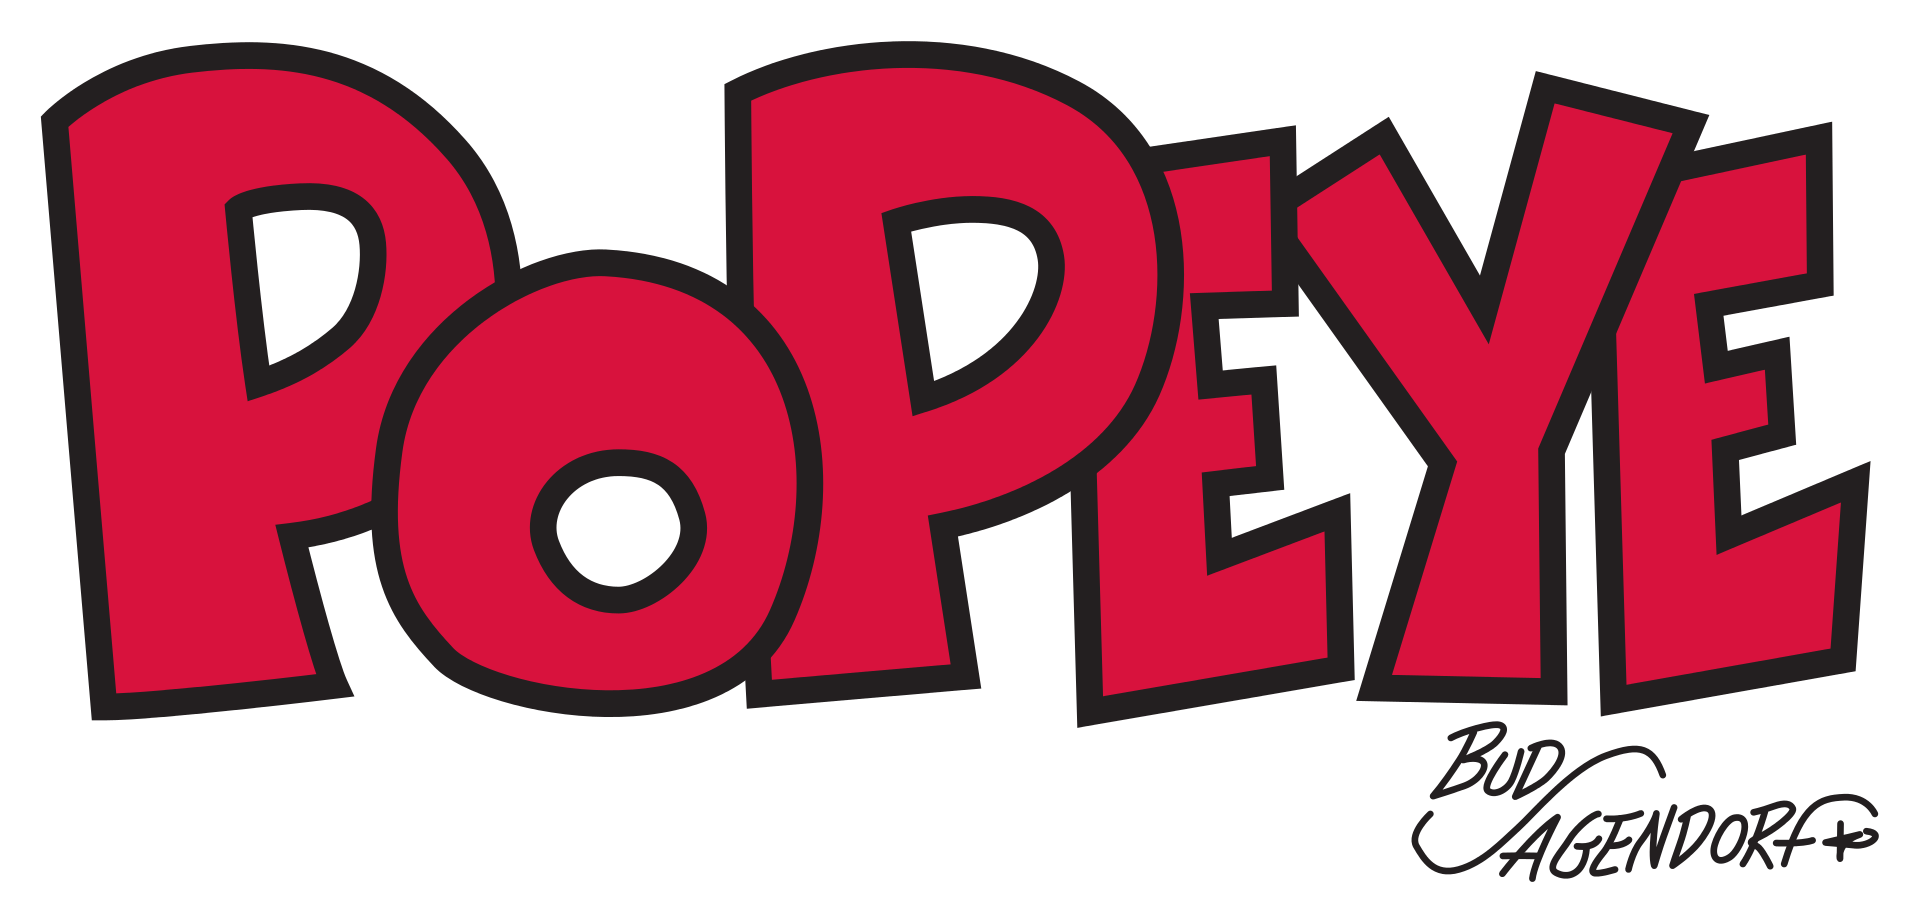 今年で95周年！ 世界的人気キャラクター「ポパイ」の新たな実写映画が製作開始 - WEEKEND CINEMA